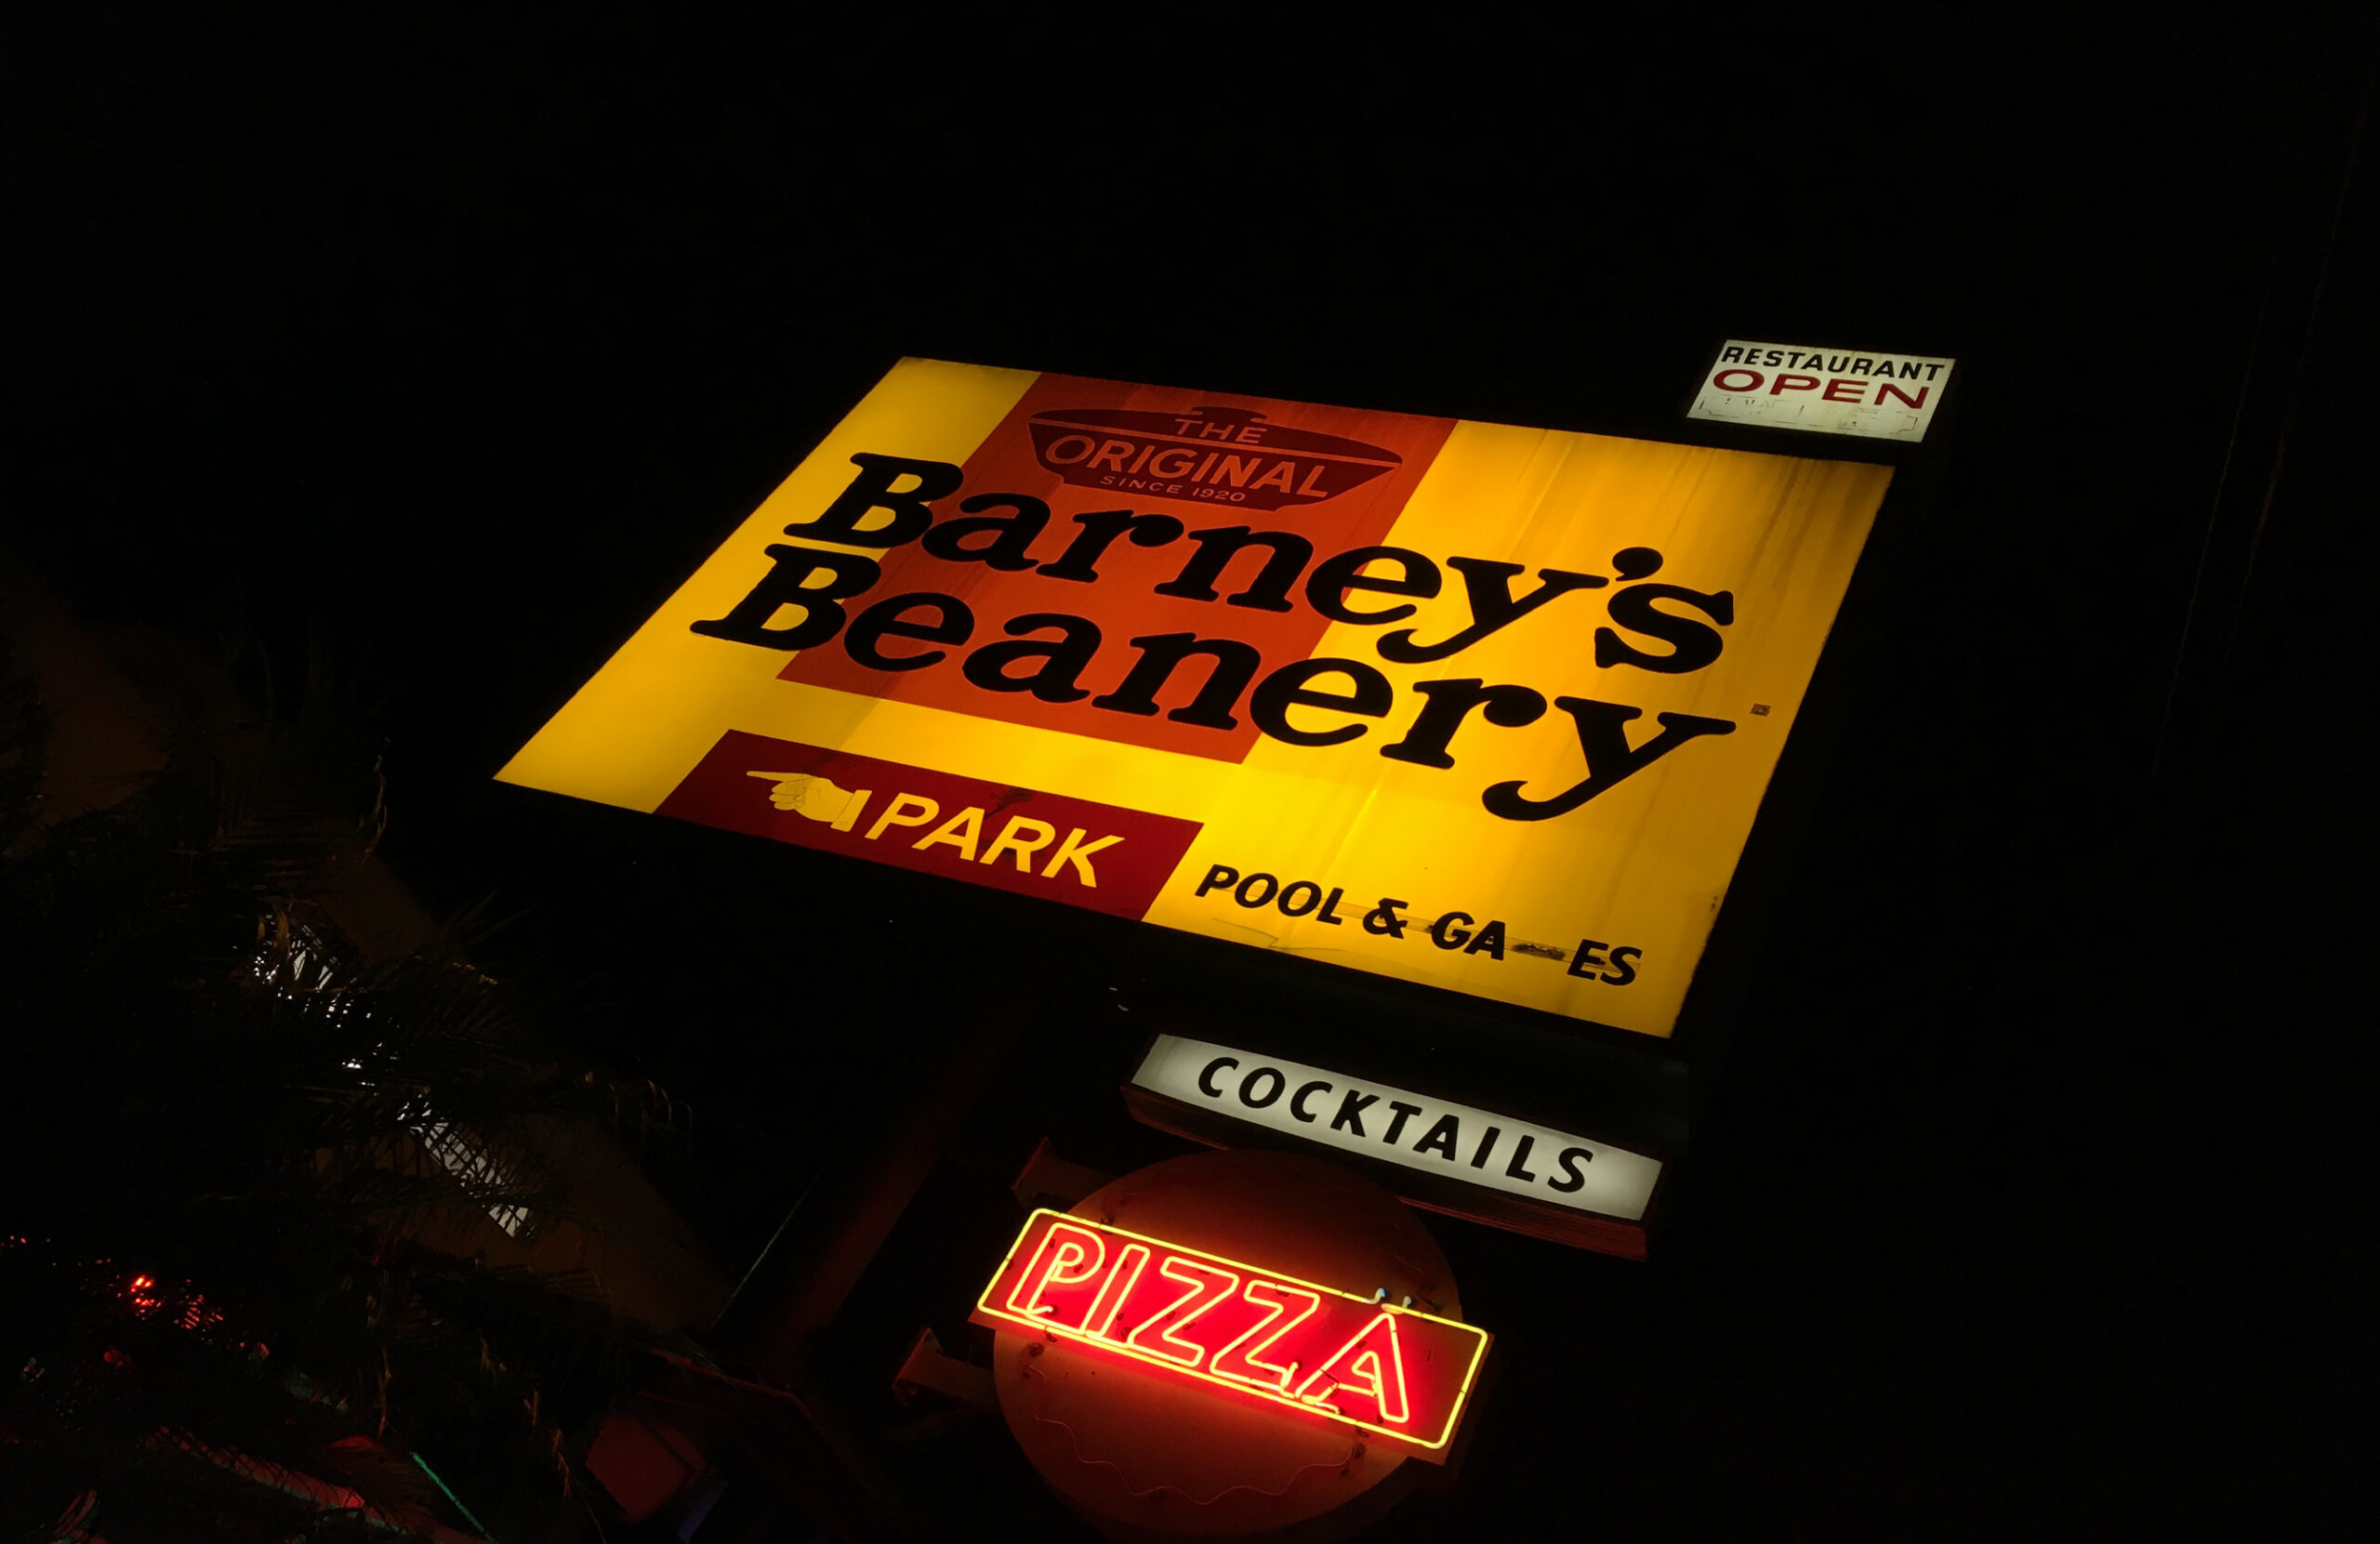 Barney's Beanery